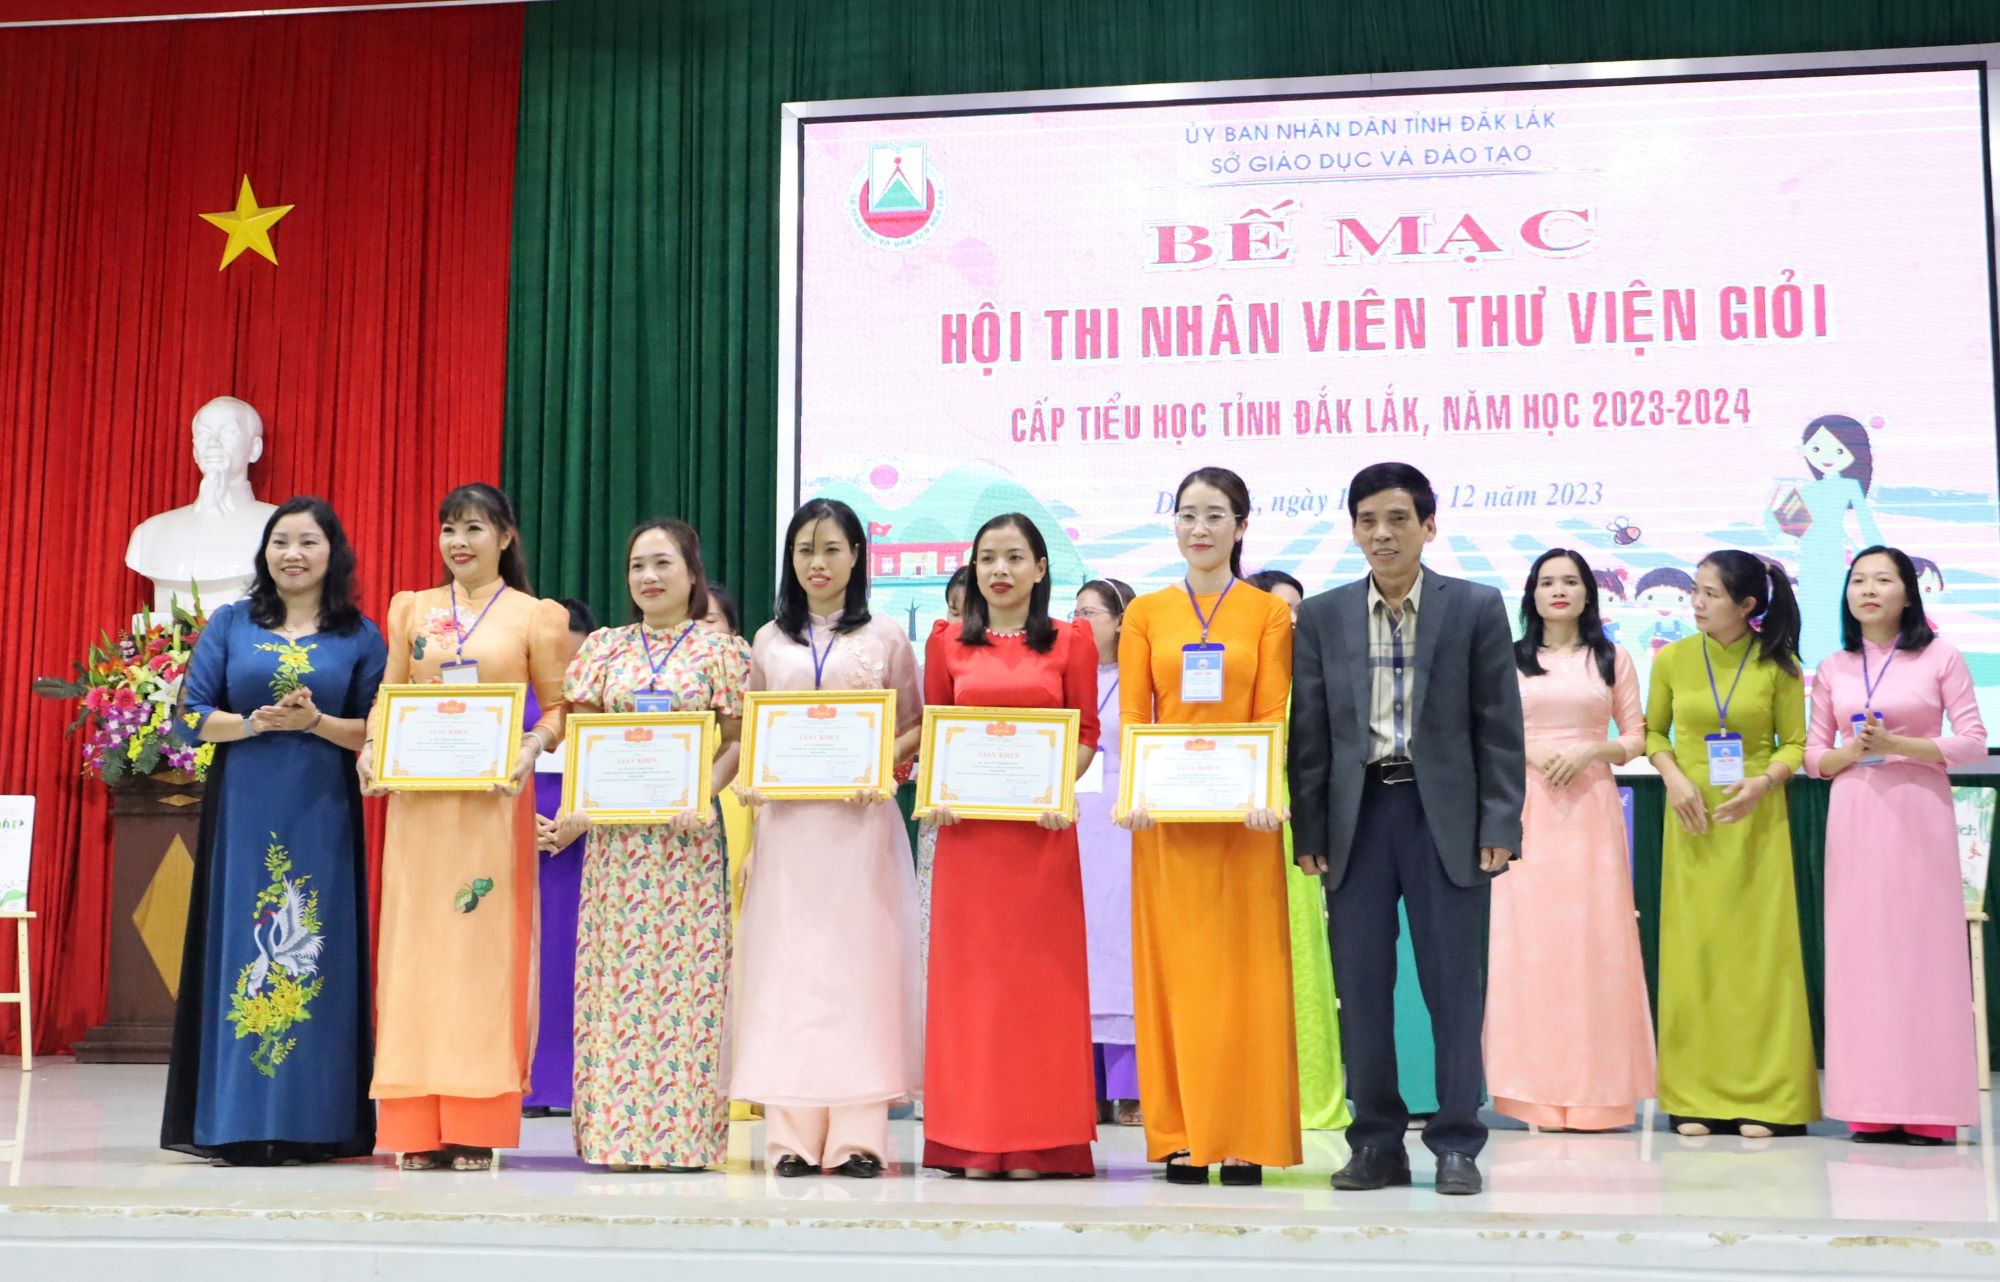 Bế mạc Hội thi Nhân viên thư viện giỏi cấp tiểu học tỉnh Đắk Lắk năm học 2023-2024